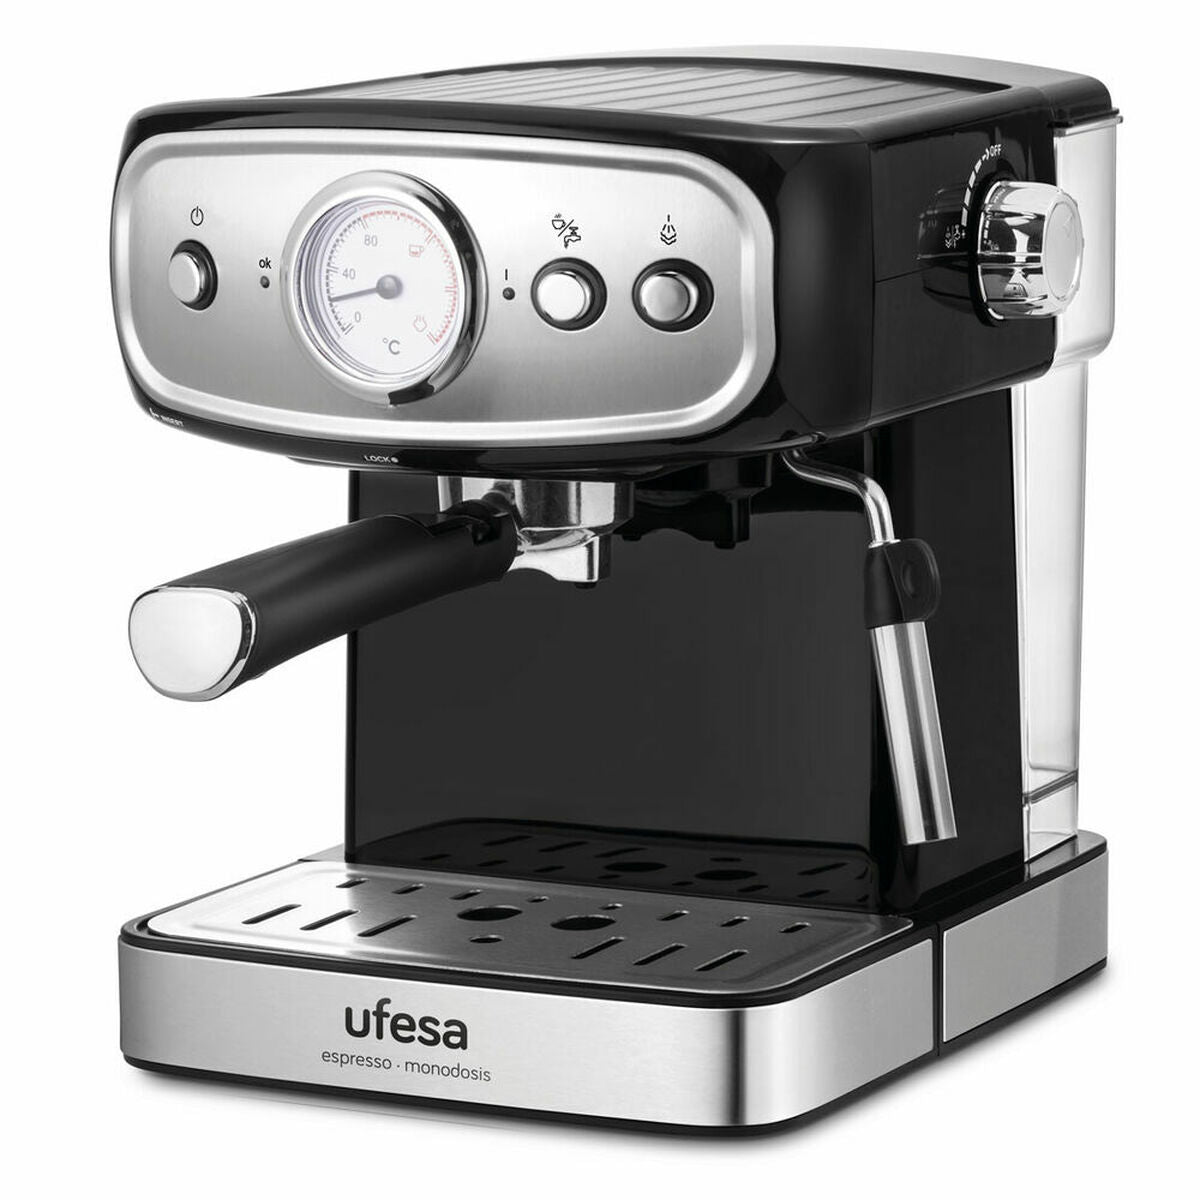 Machine de café manuelle express UFESA CE7244 1,5 L Black Silver 850 W